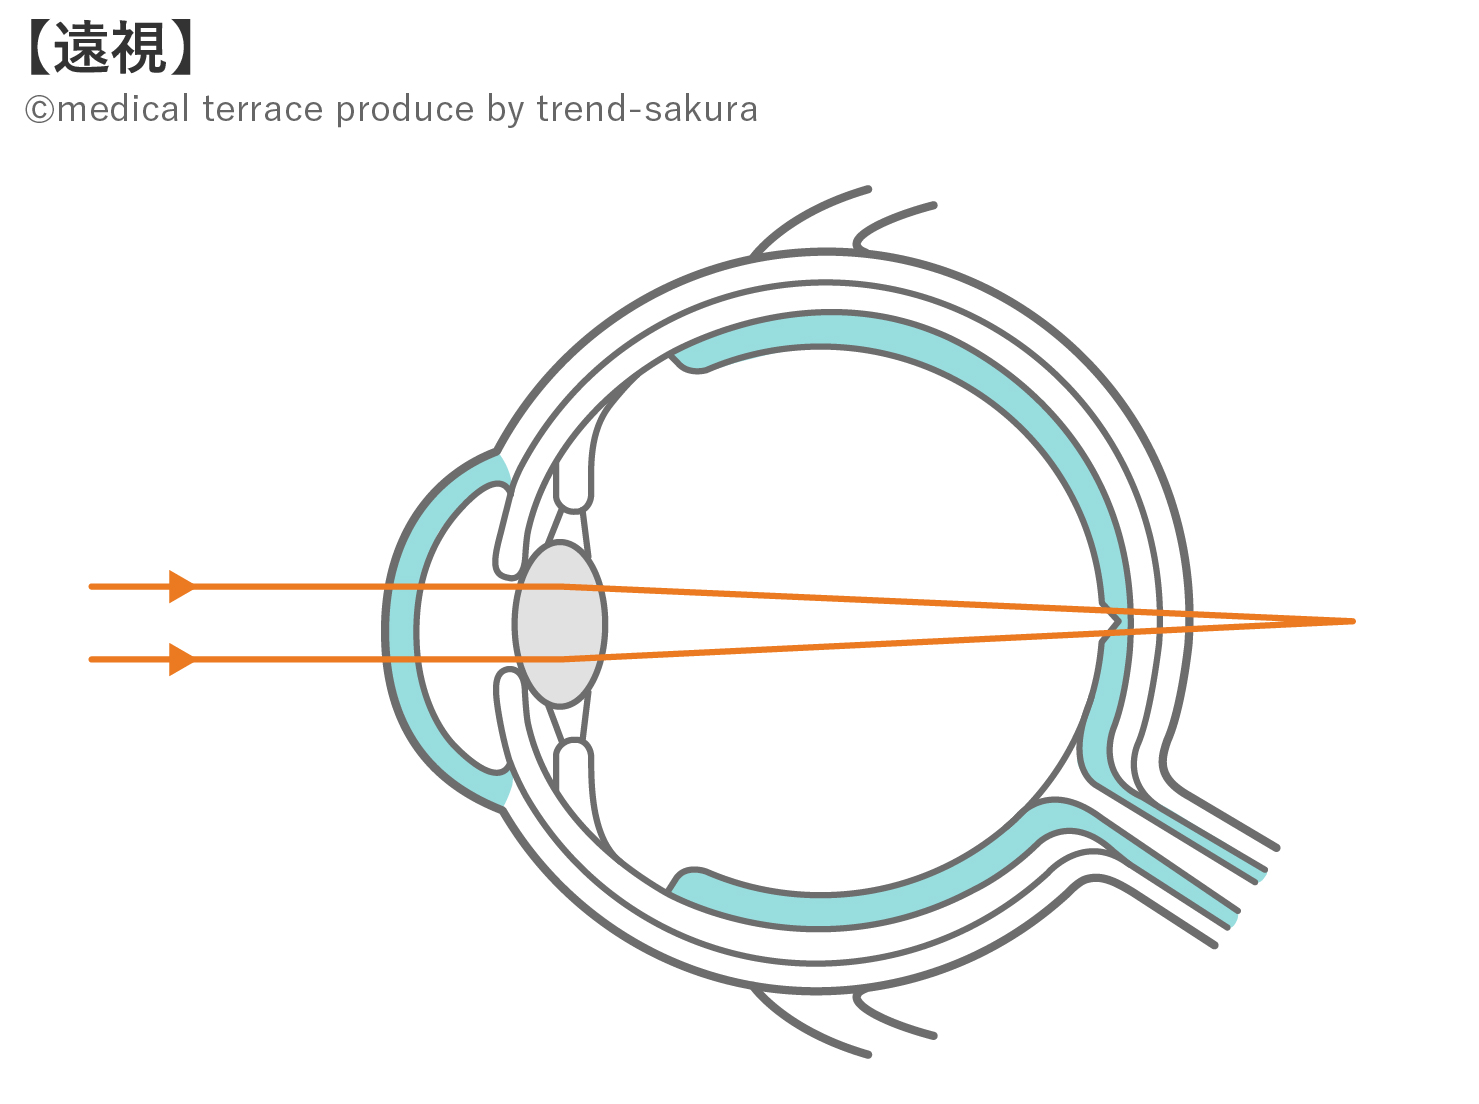 眼球断面図と組織の役割